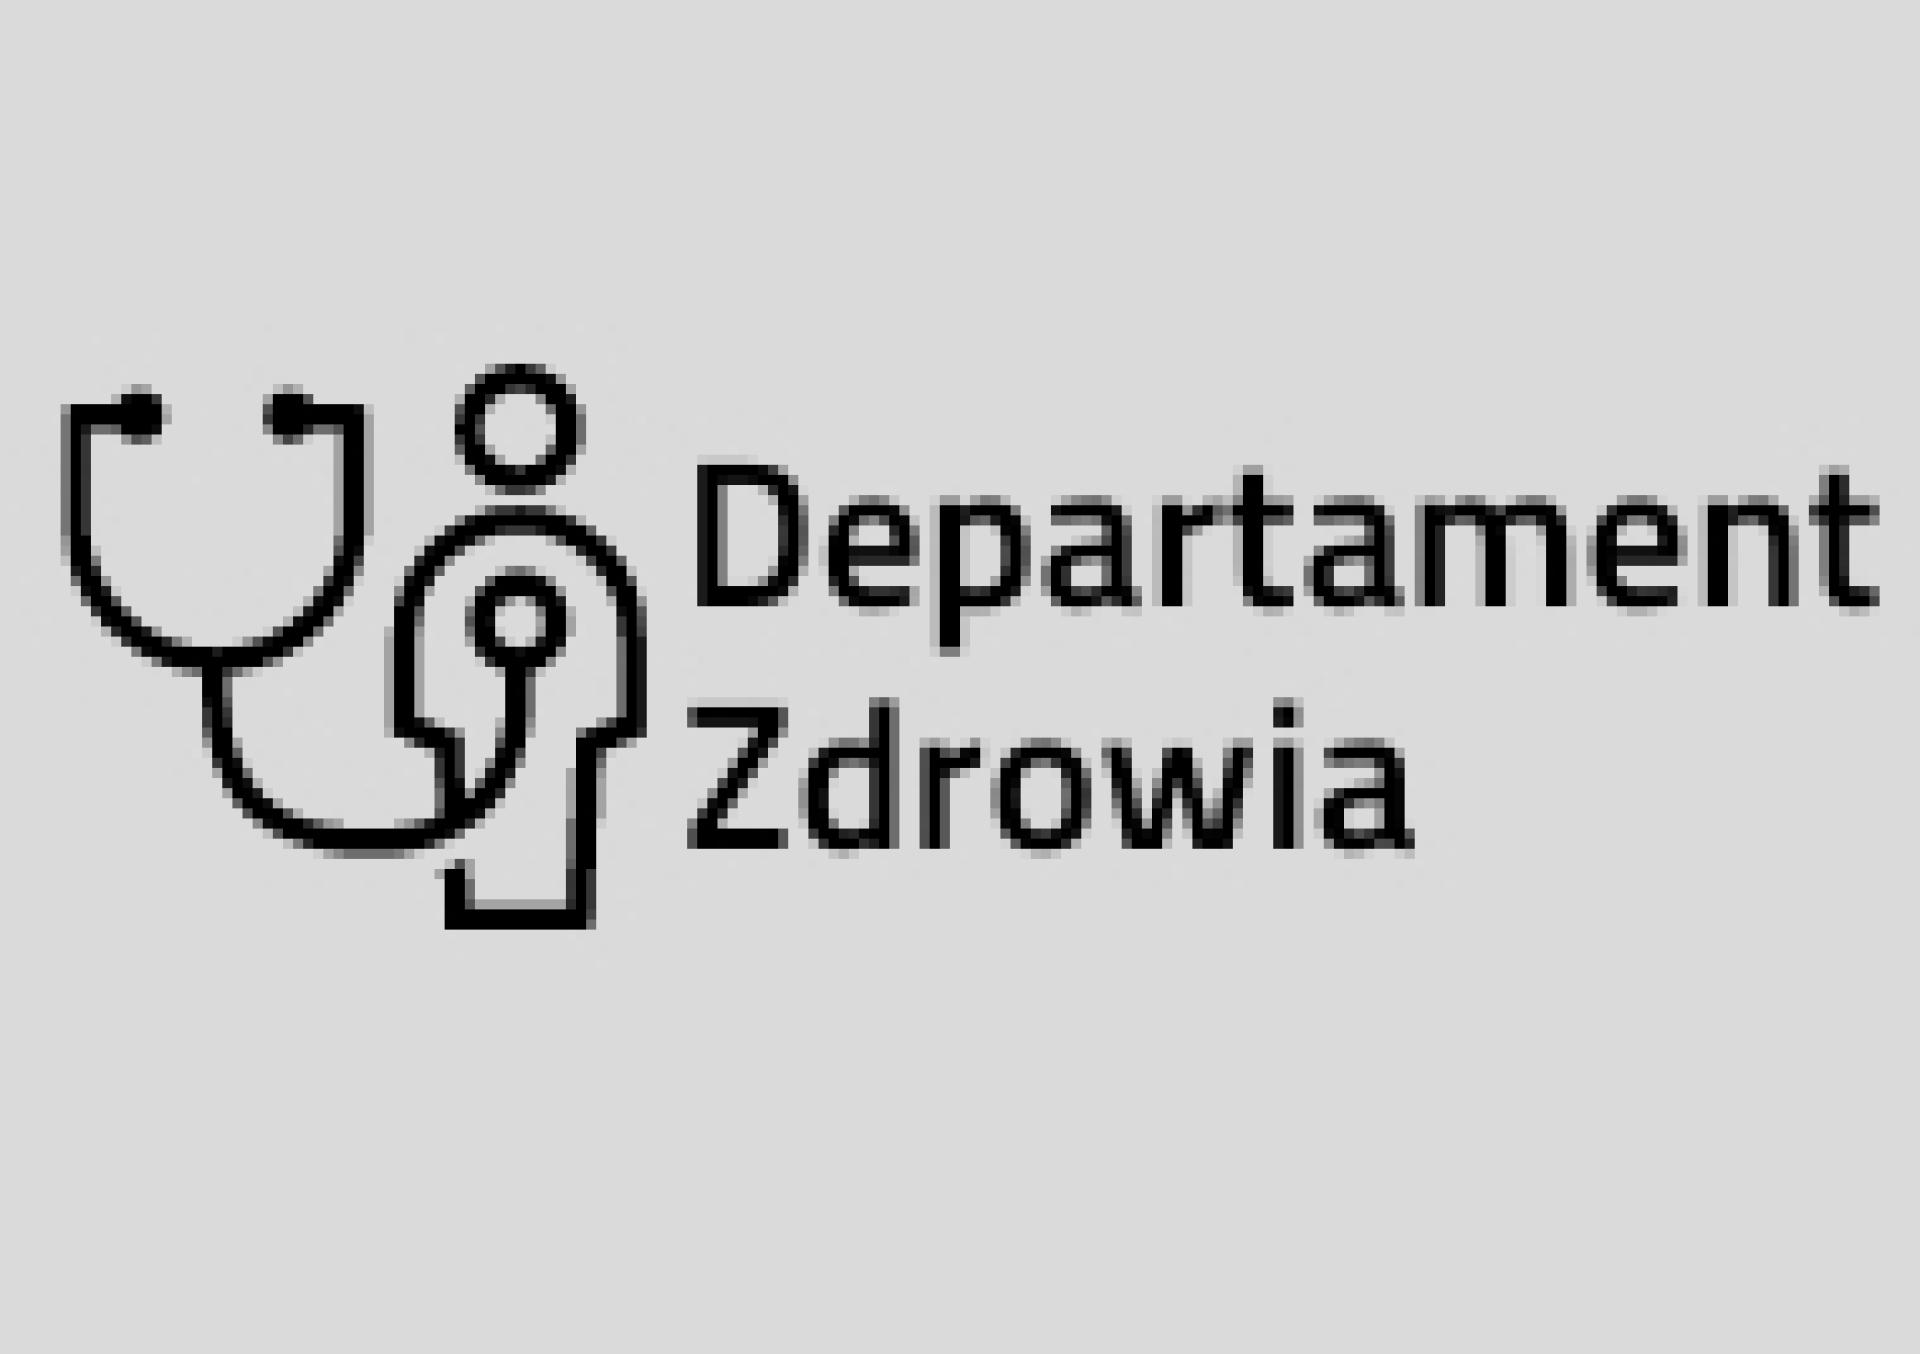 Konsultacje projektu uchwały Sejmiku zmieniającej uchwałę w sprawie nadania statutu Szpitalowi Wojewódzkiemu w Poznaniu - zobacz więcej